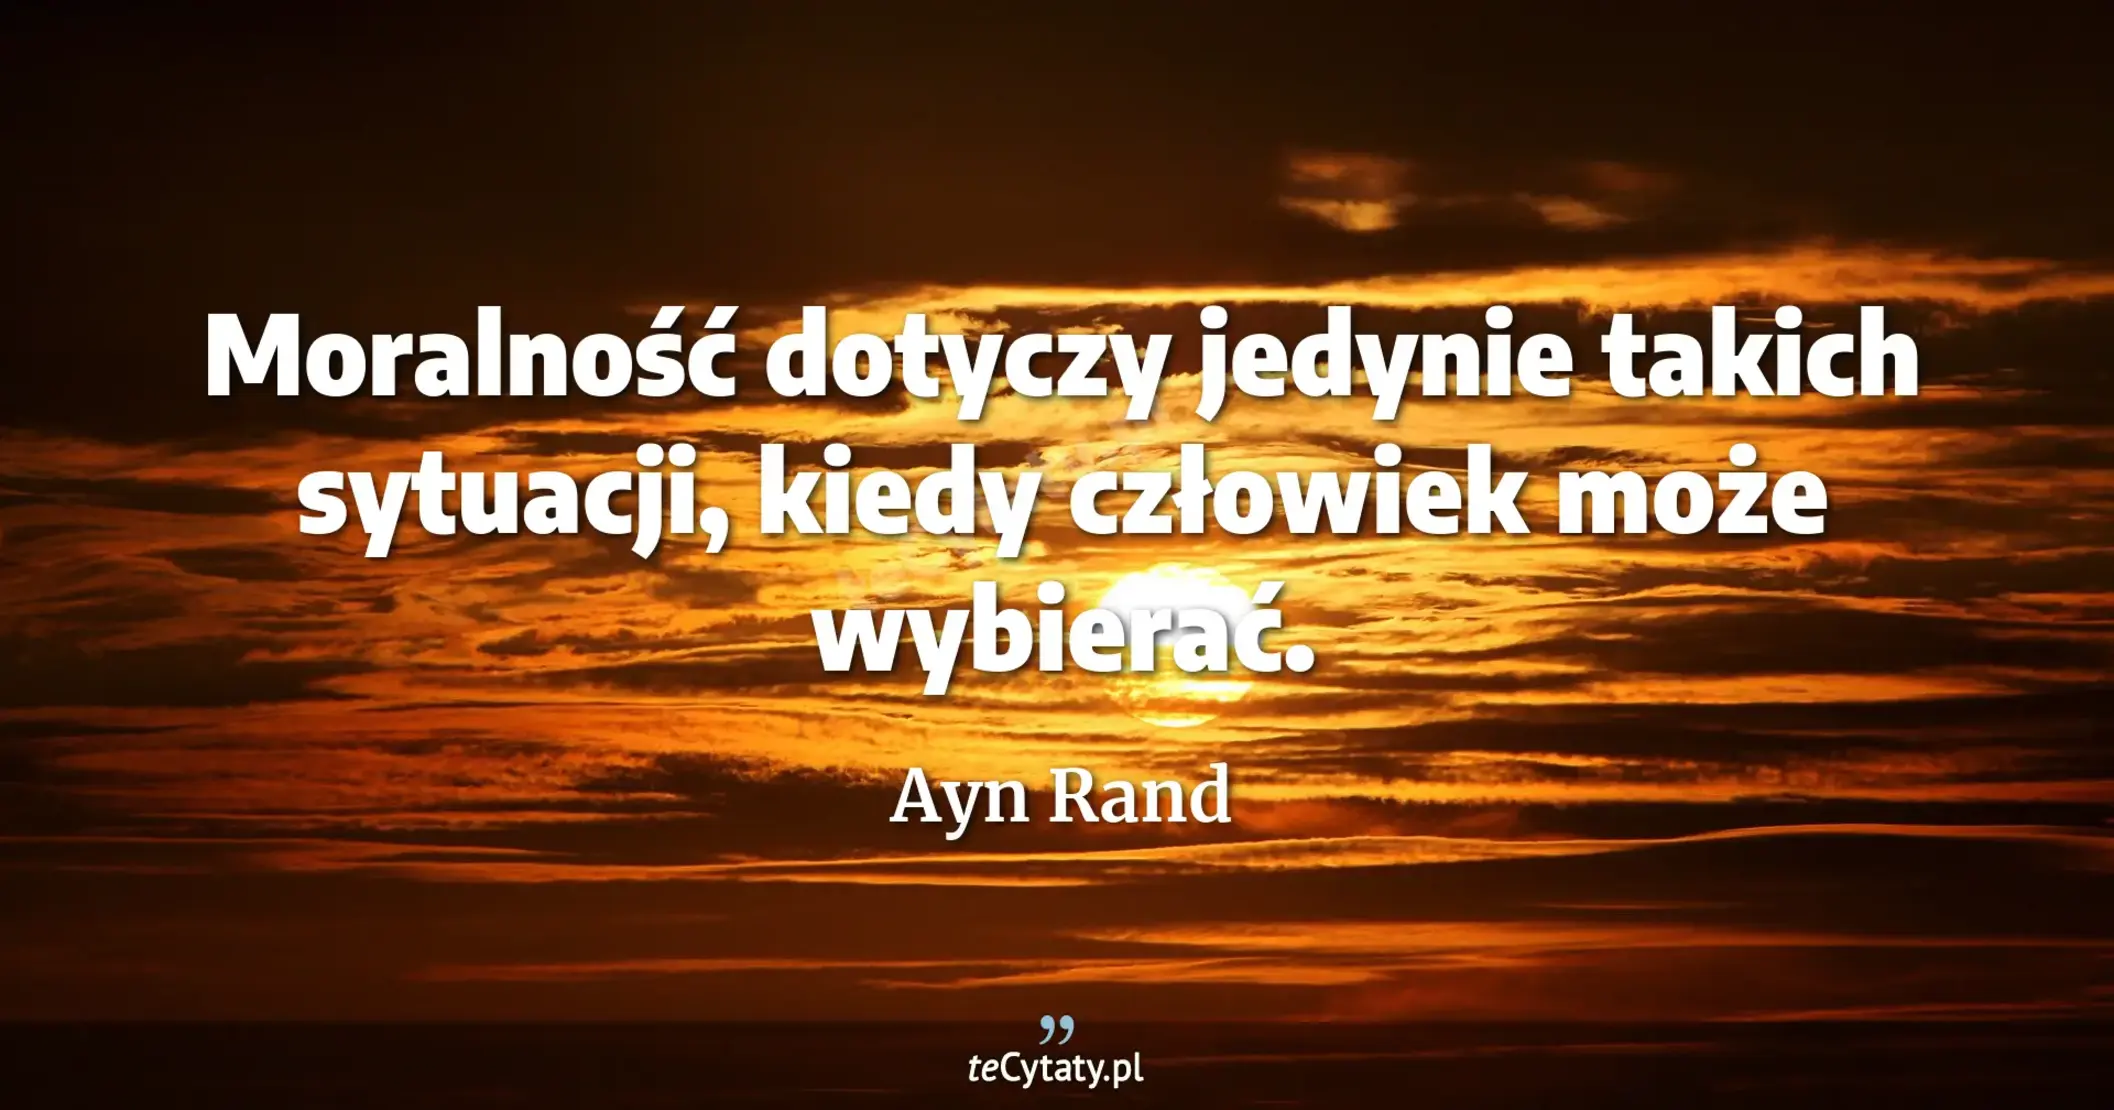 Moralność dotyczy jedynie takich sytuacji, kiedy człowiek może wybierać. - Ayn Rand